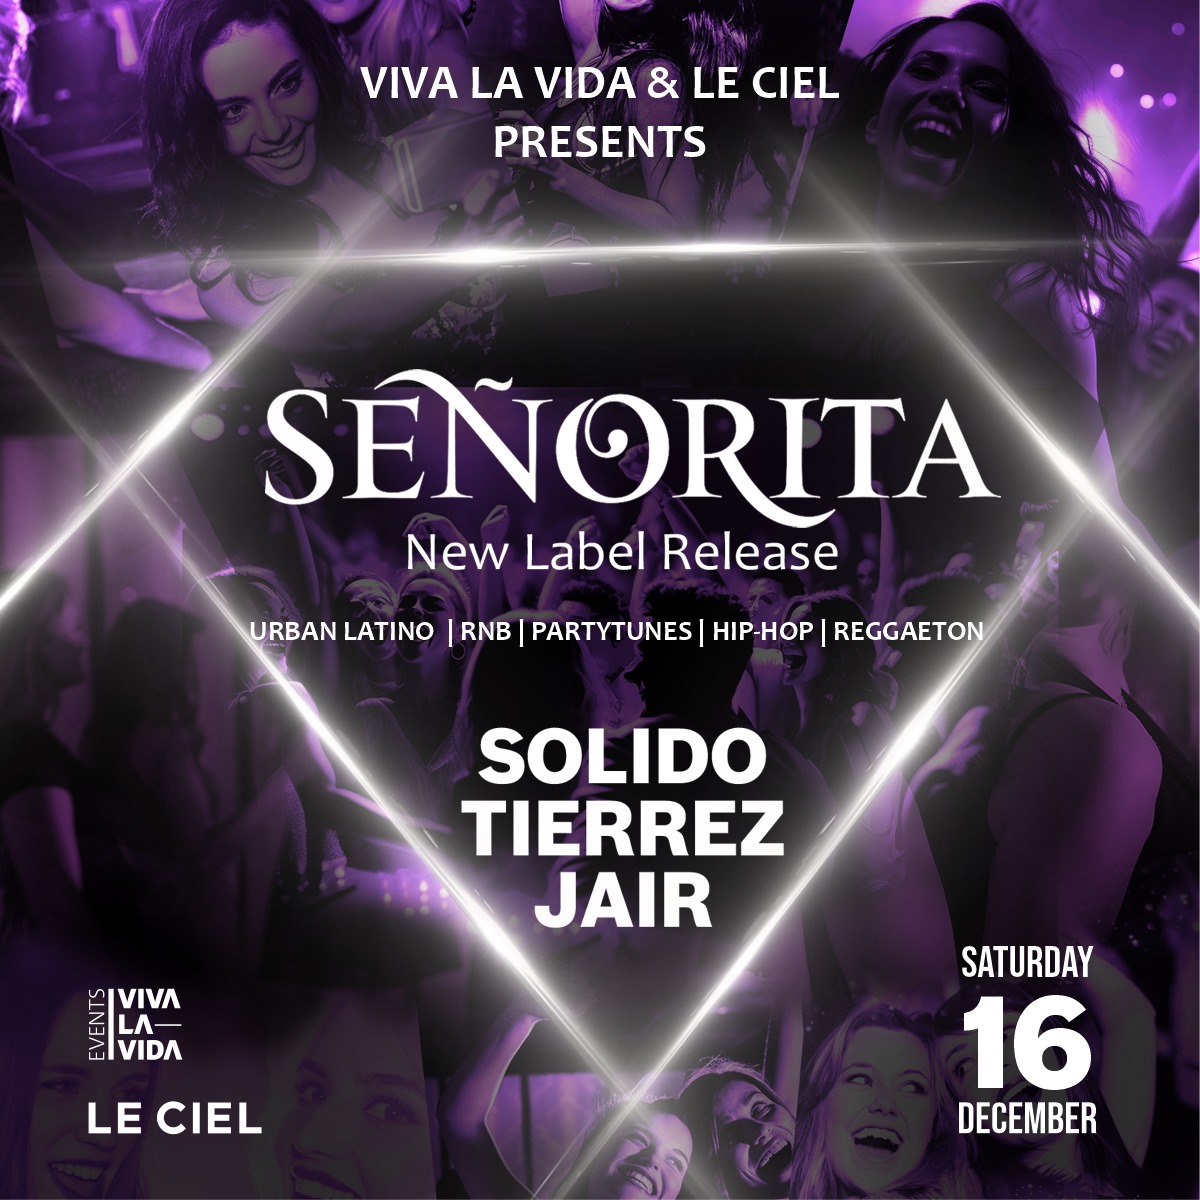 SEÑORITA presented by Viva La Vida & Le Ciel Flyer